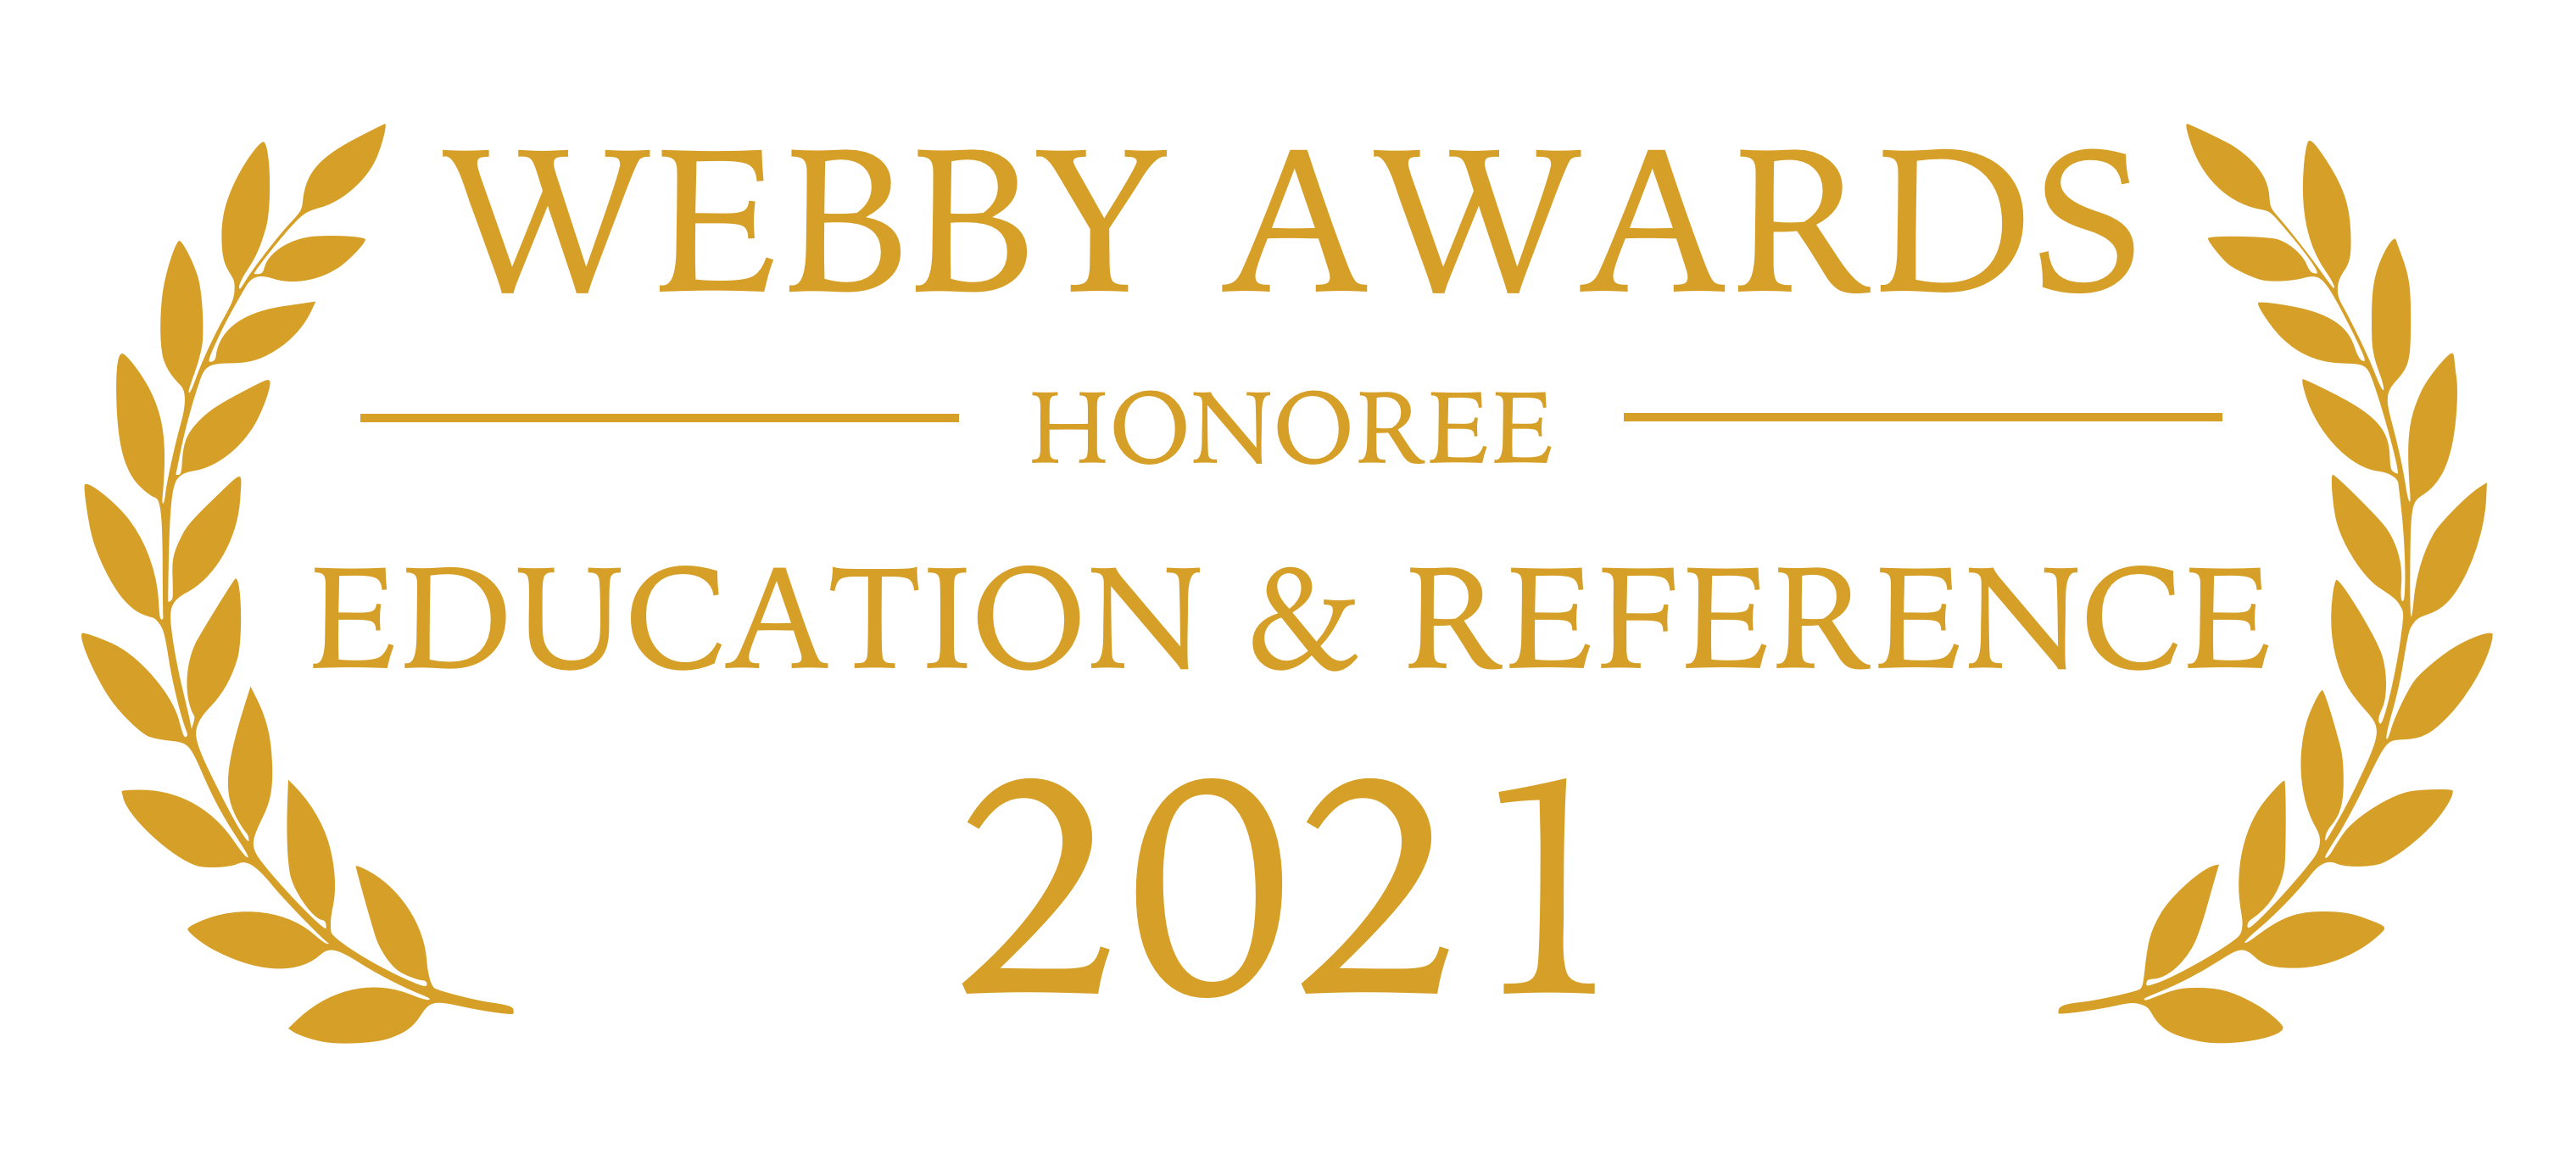 Webby Awards 2021: Honoree